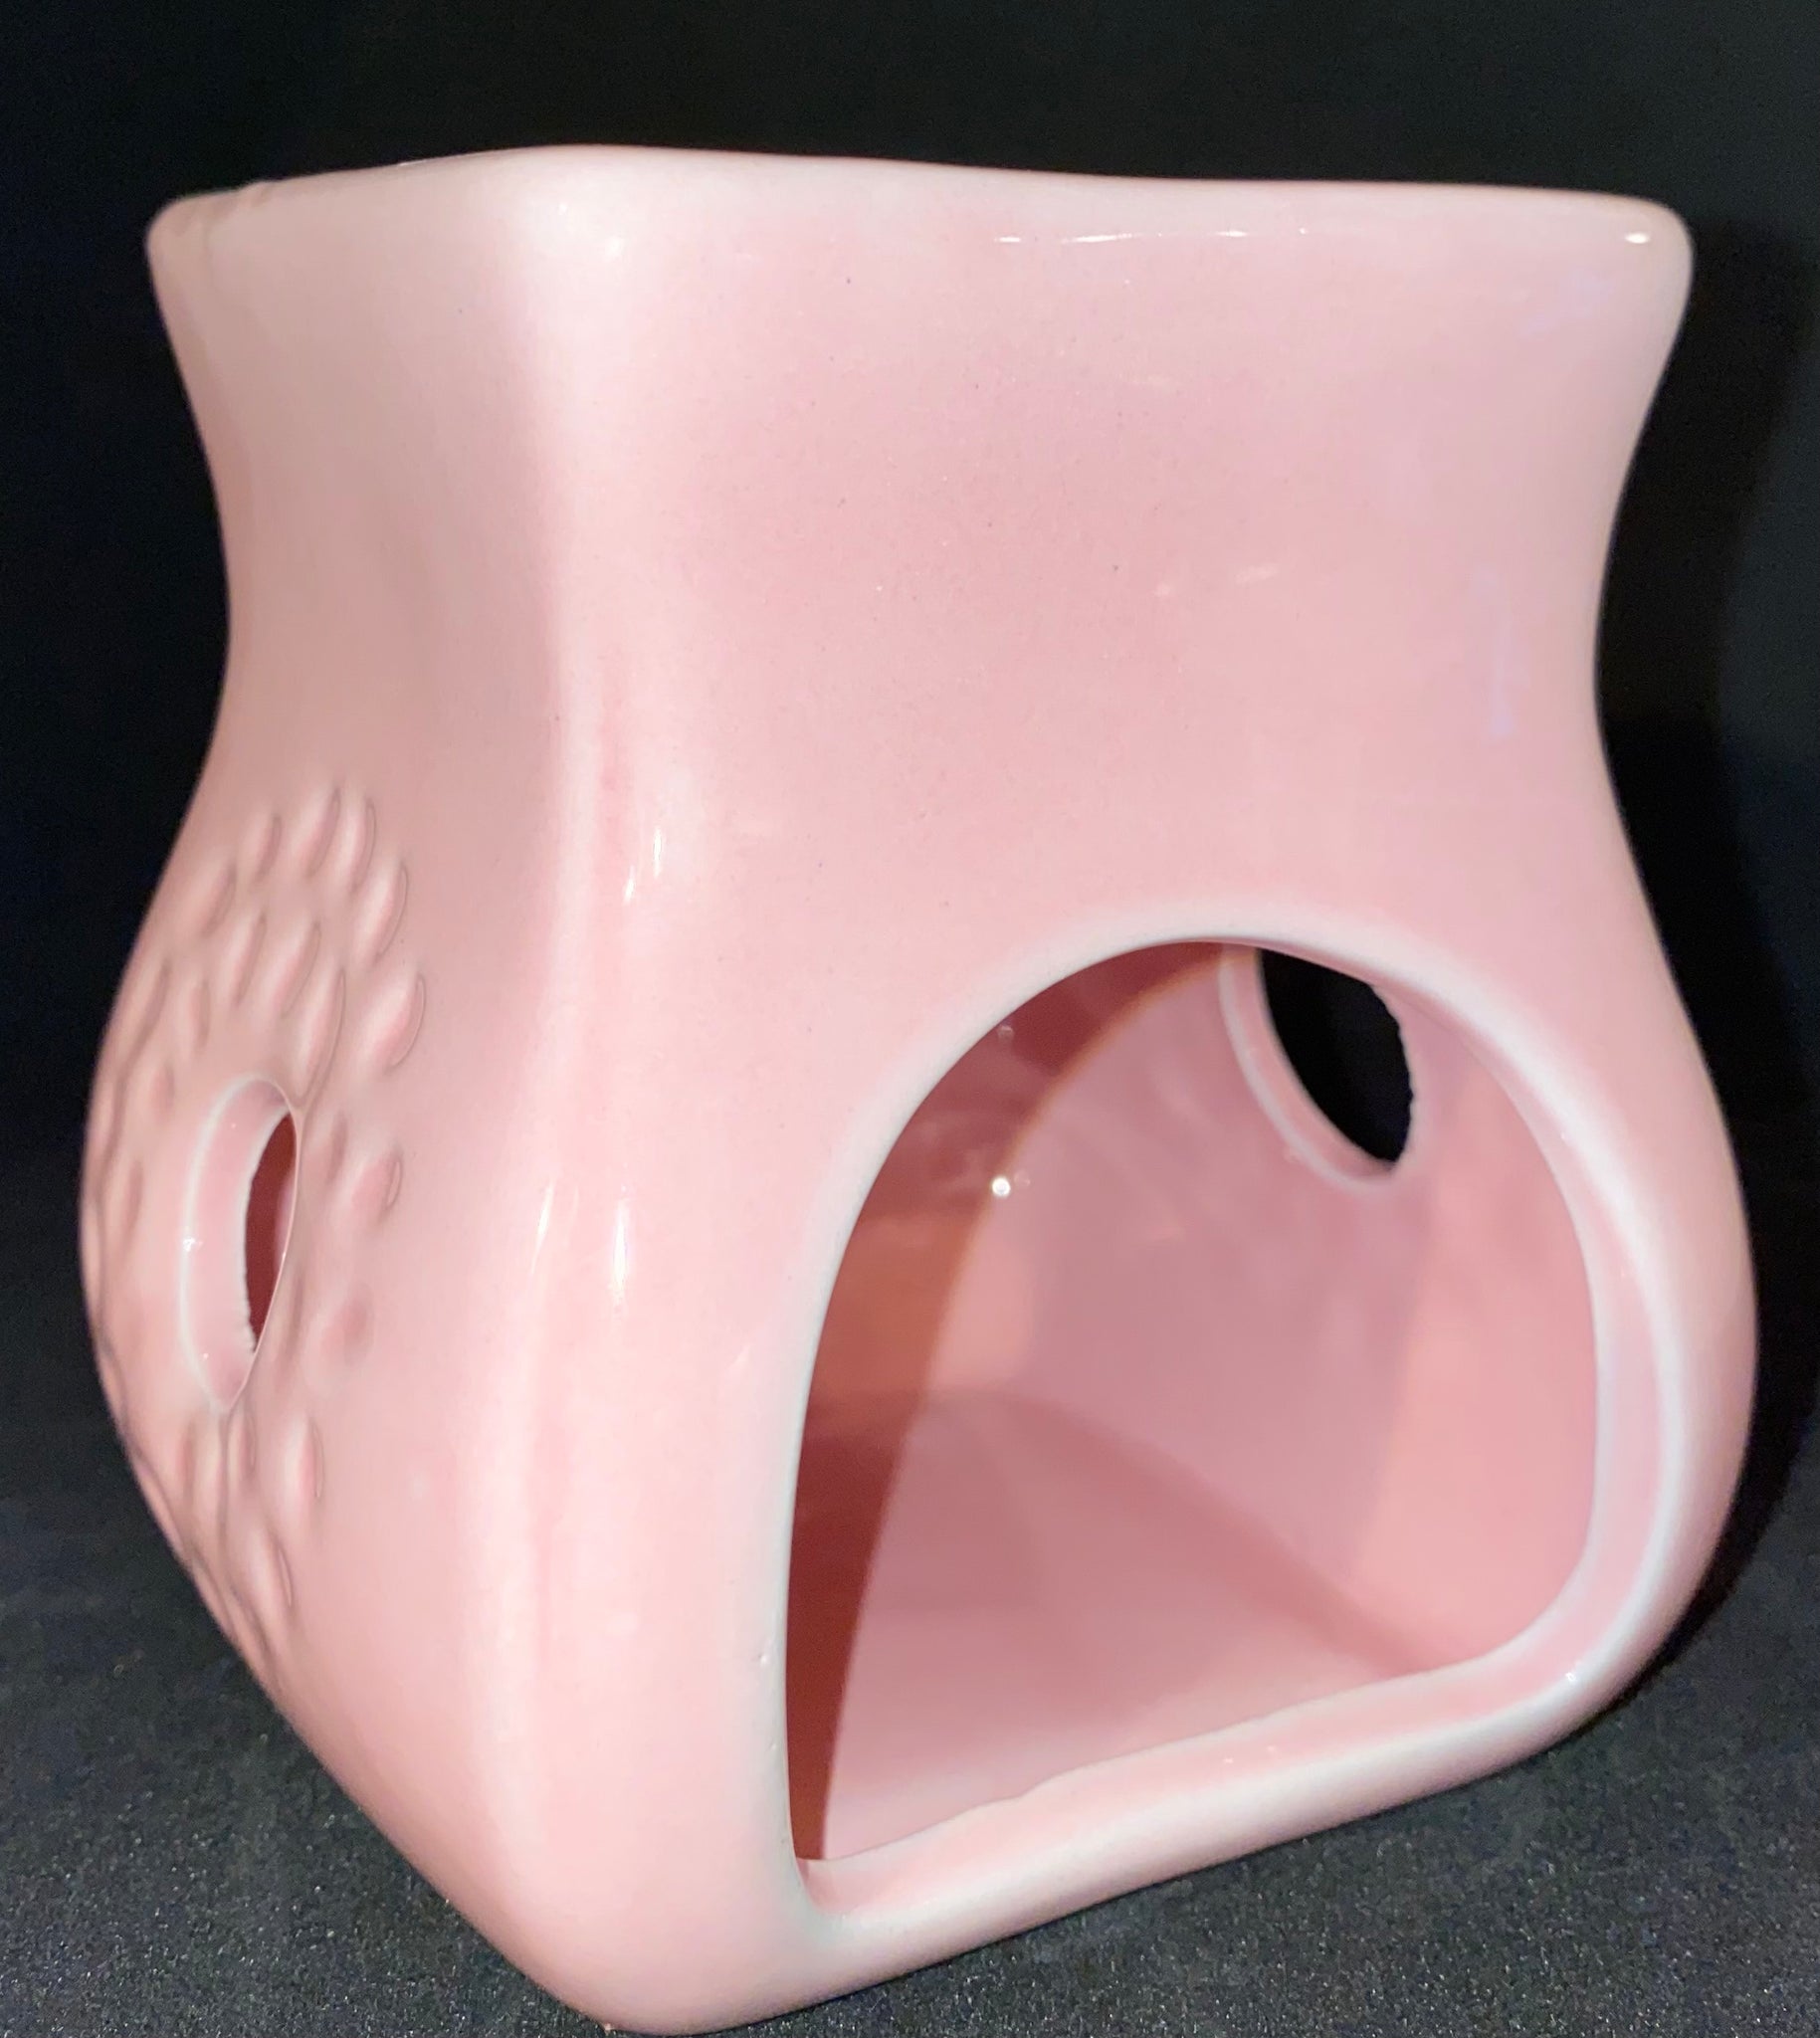 Ceramic Wax melt Warmer – ili lusso